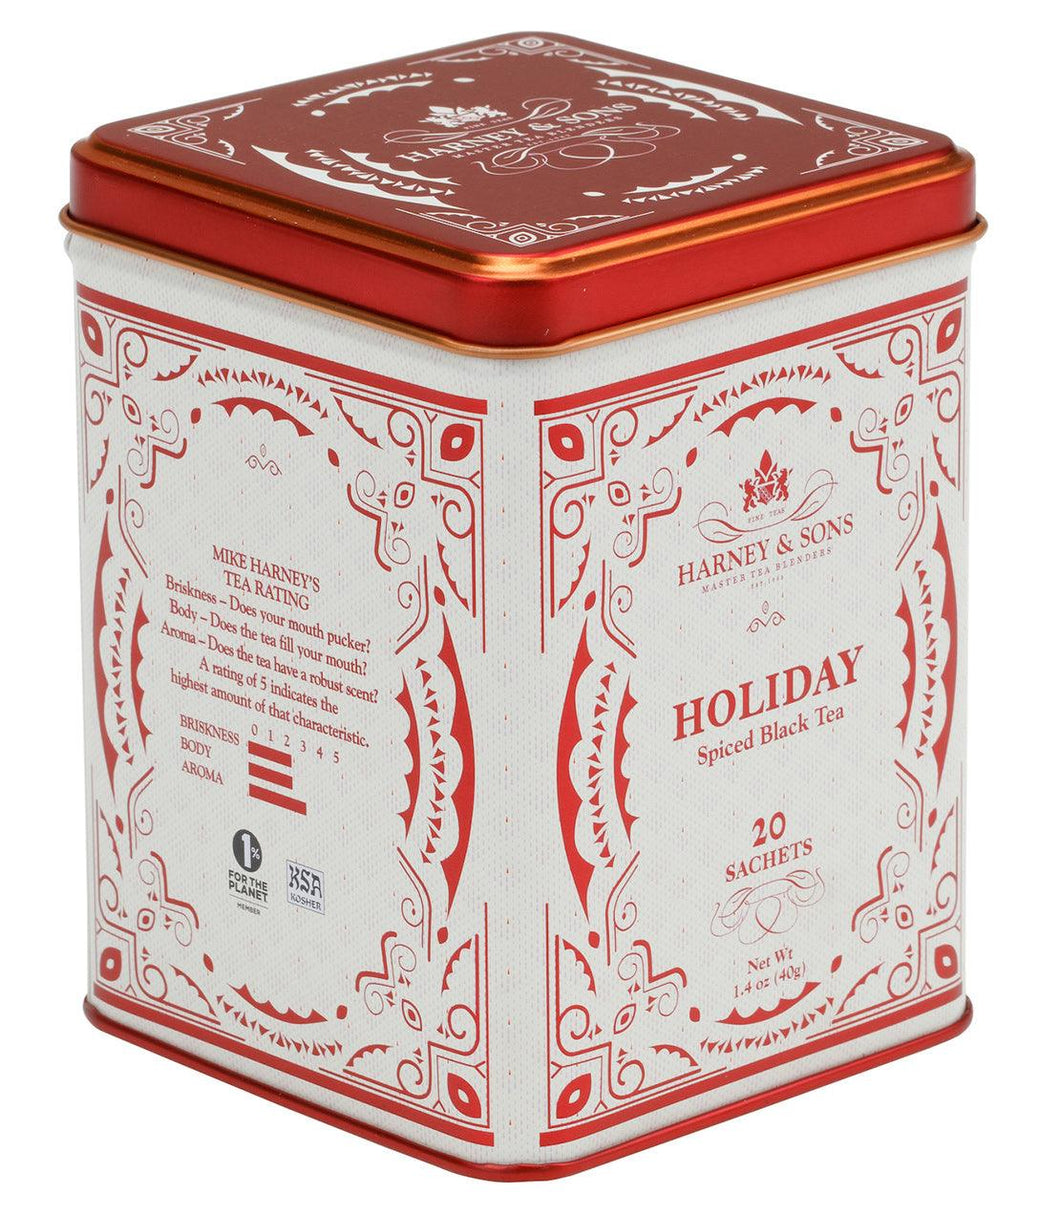 Harney & Sons Holiday Tea (20 Sachets) - Premium Teas Canada